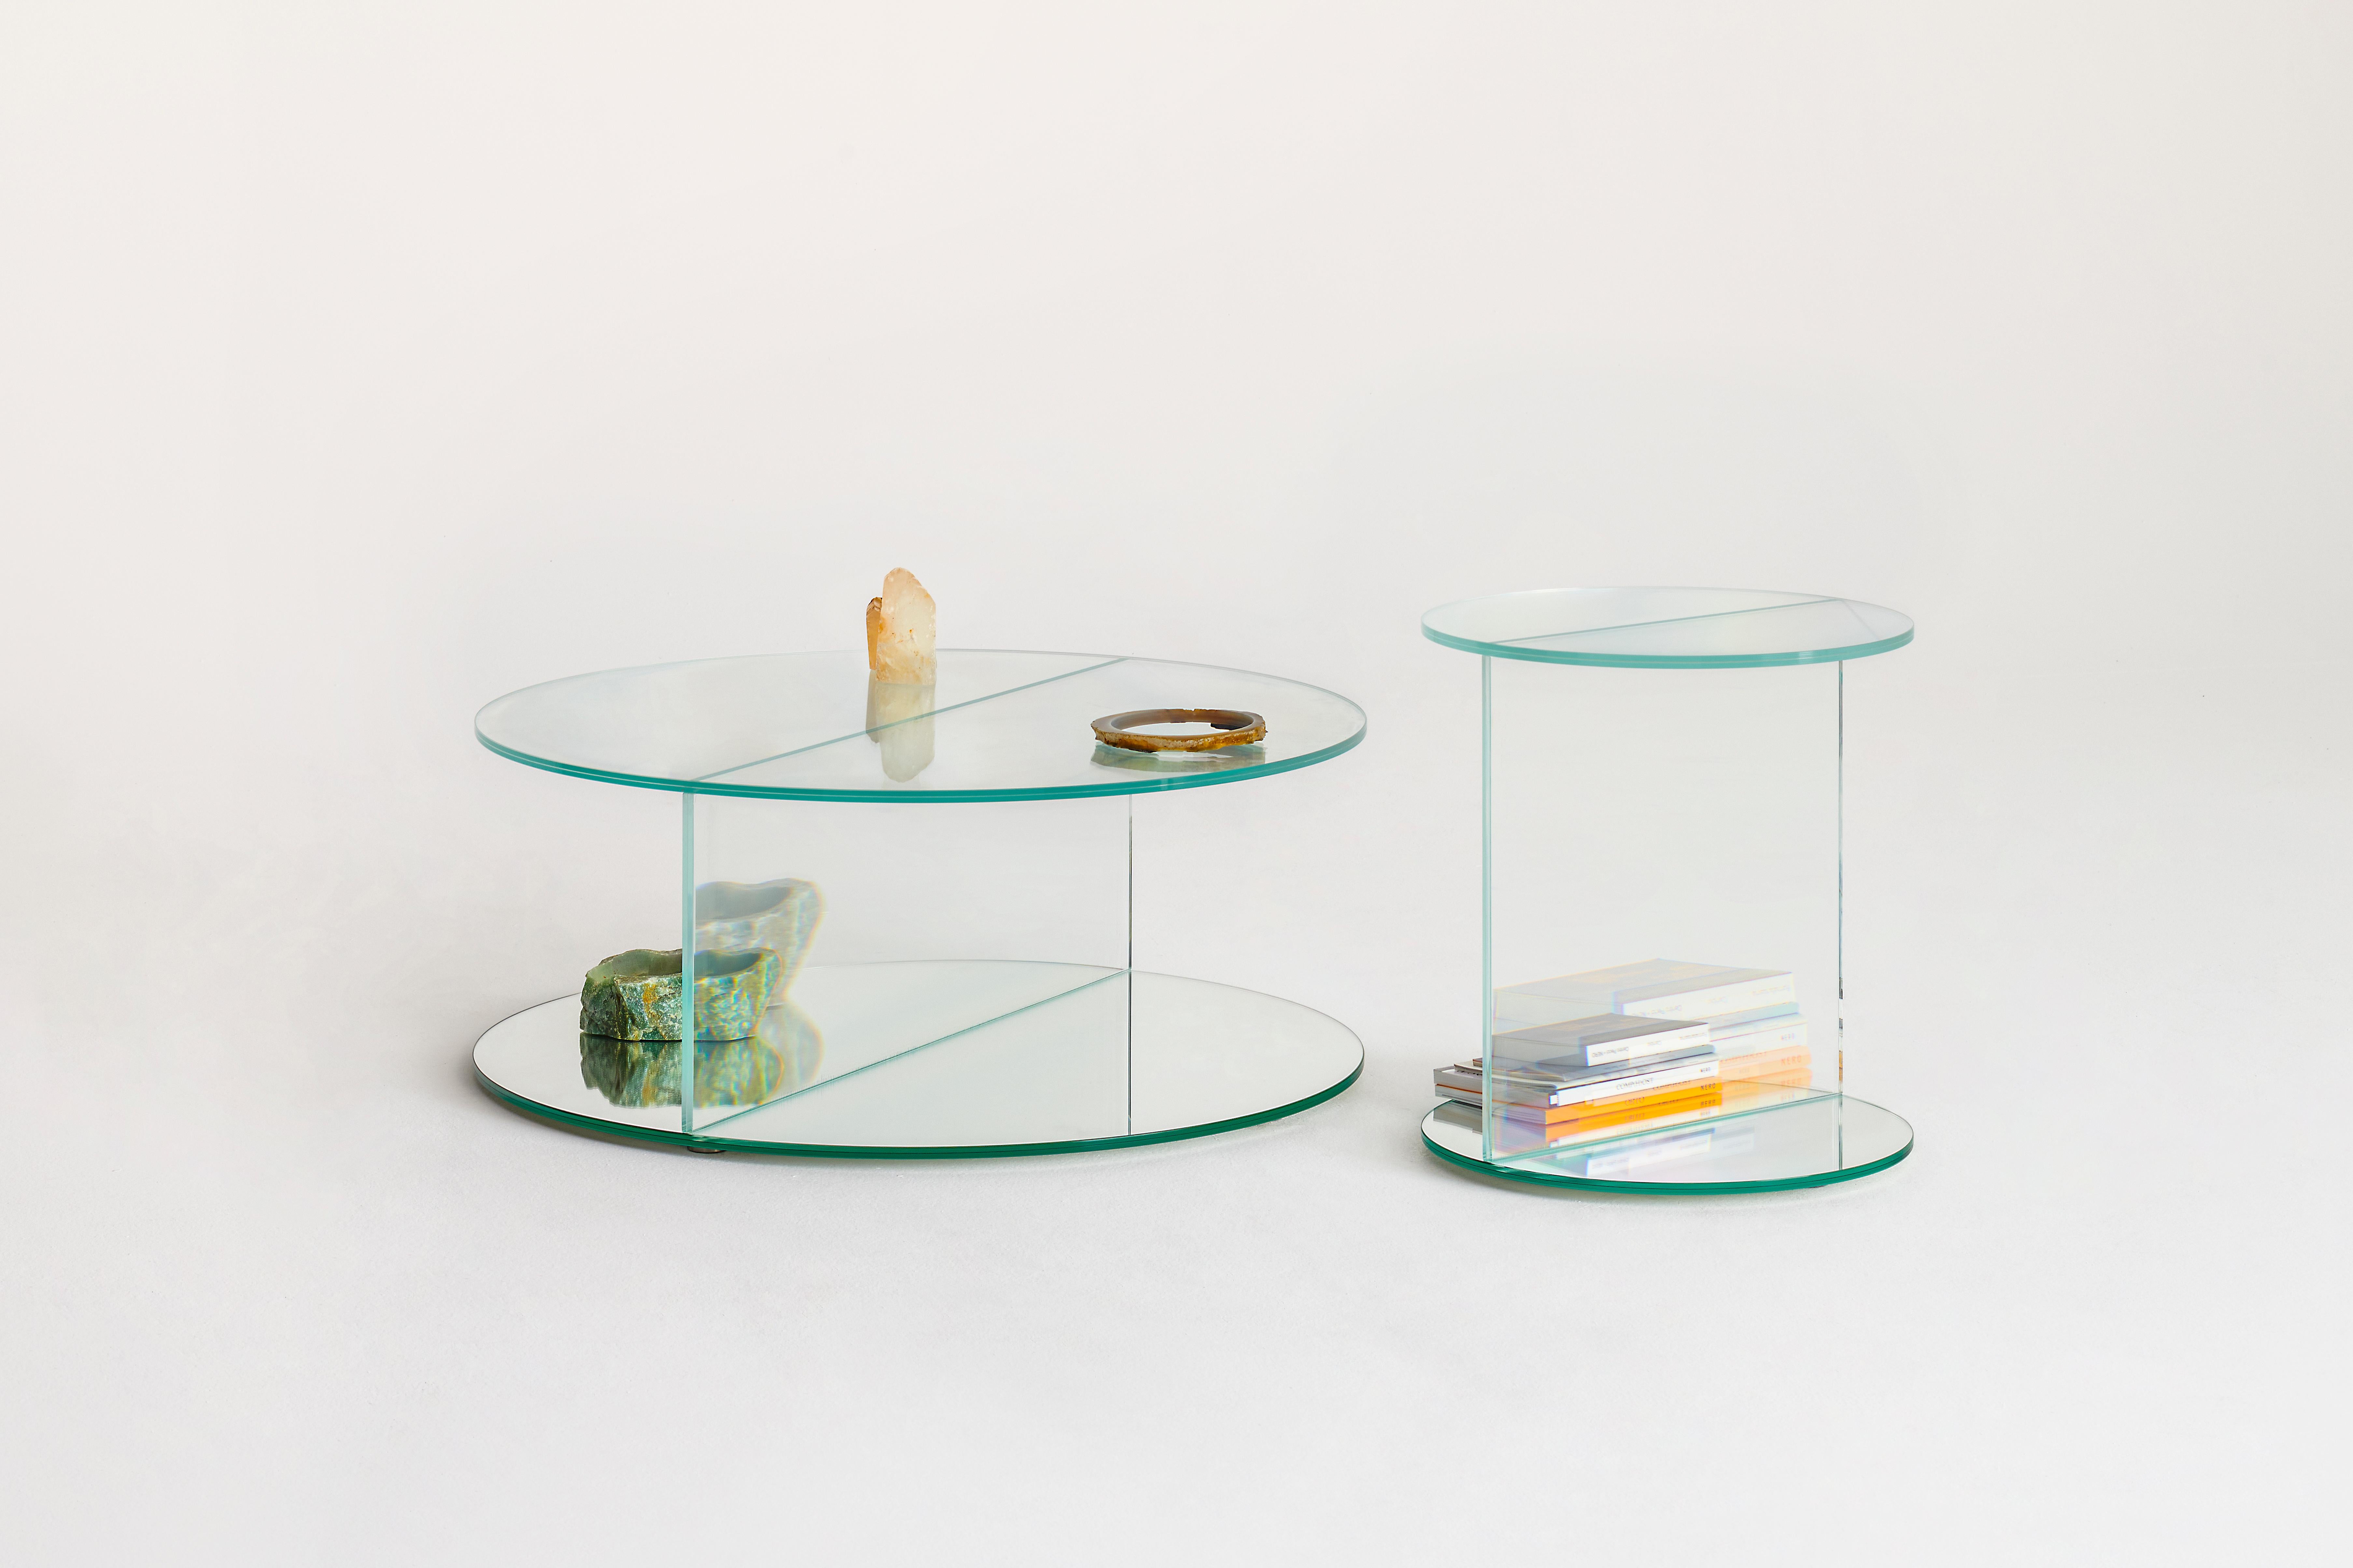 Collection'S von niedrigen Tischen, Schränken und Konsolen mit quadratischer oder runder Form aus innovativem Verbundglas, das außergewöhnliche optische Illusionen und wunderbare surreale Effekte erzeugt.
Die Objekte, die sich in diesen